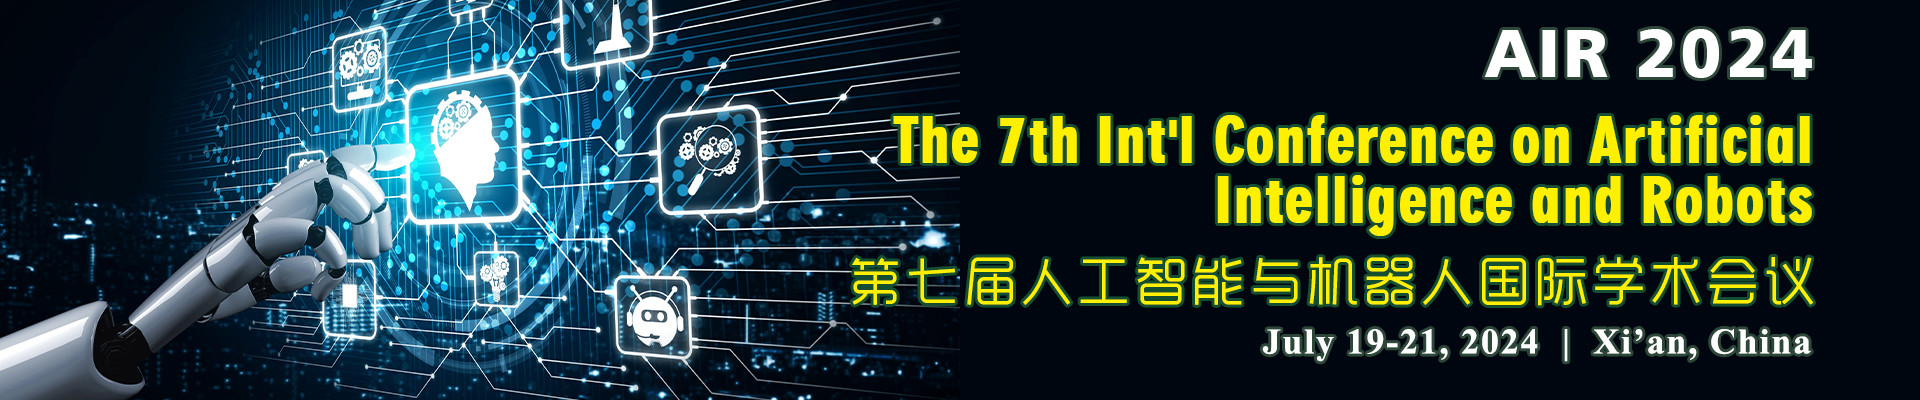 第七届人工智能与机器人国际学术会议 (AIR 2024) 